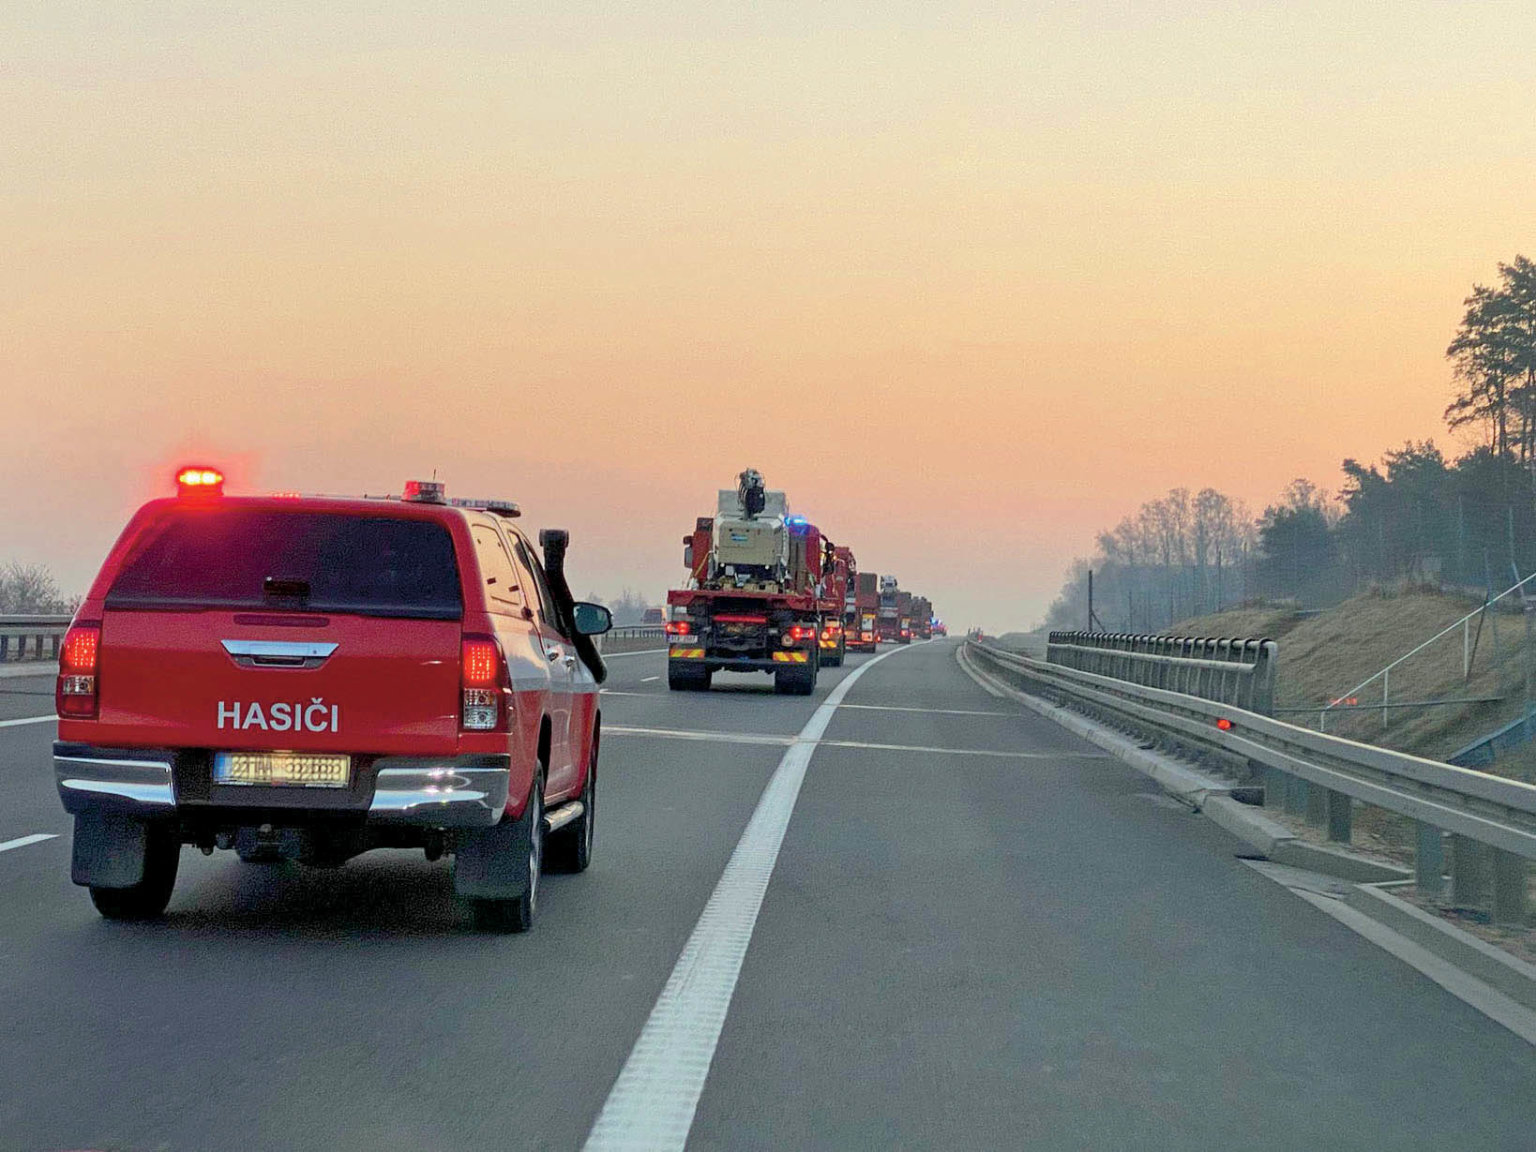 Pomoc èeských hasièù ukrajinským kolegùm míøí k hranicím.